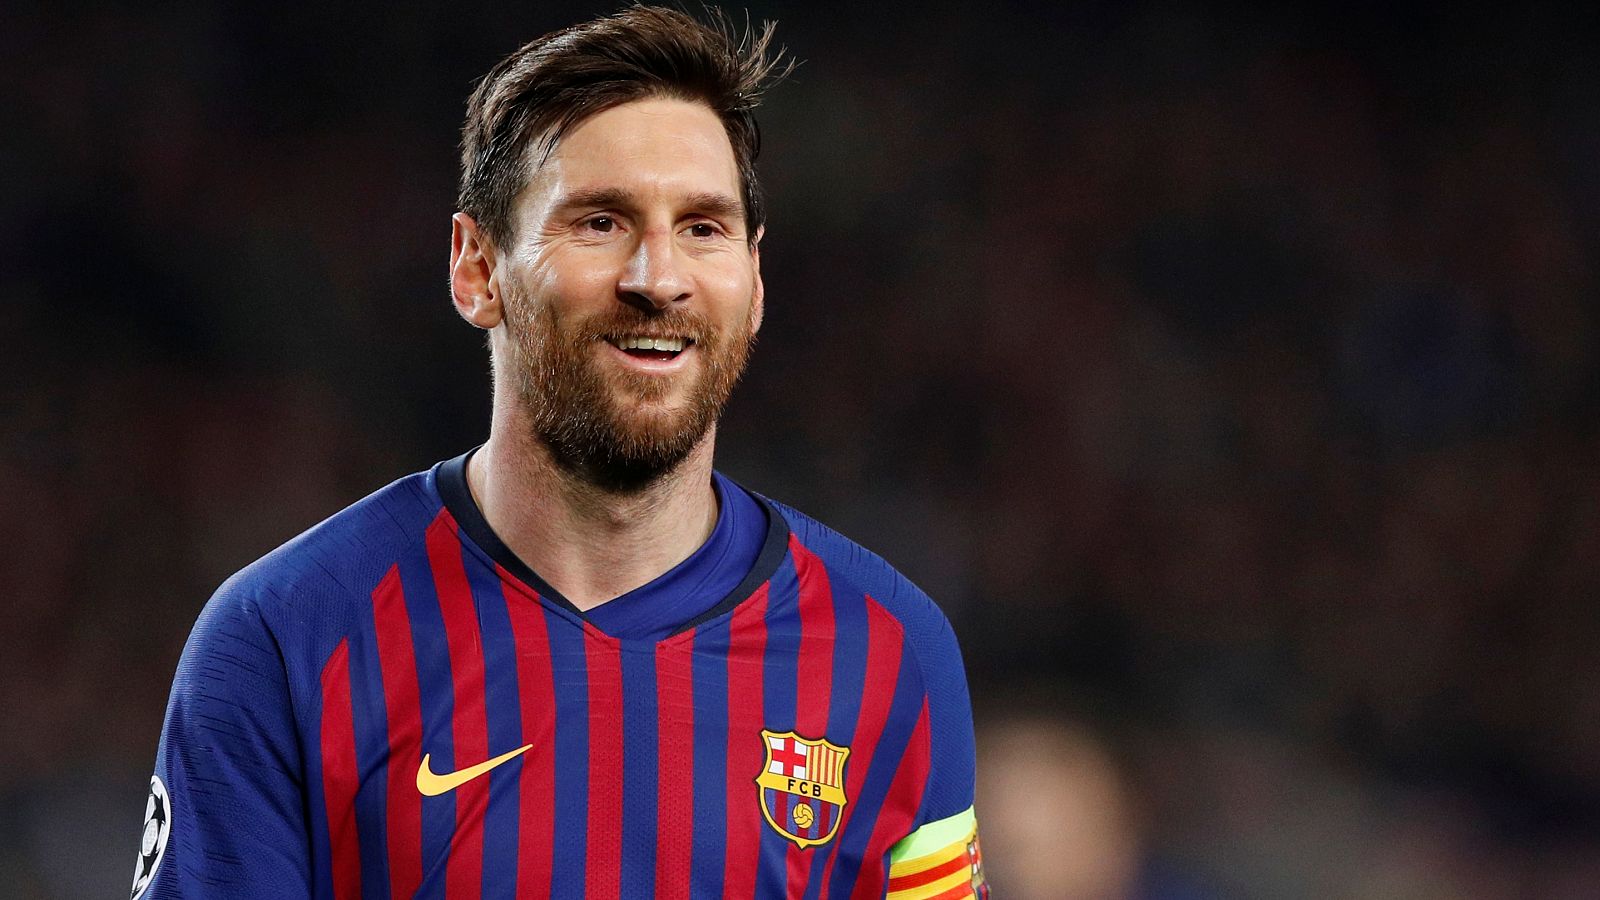 Messi sonríe tras el partido contra el Manchester United, que acabó con victoria del Barça 3-0.